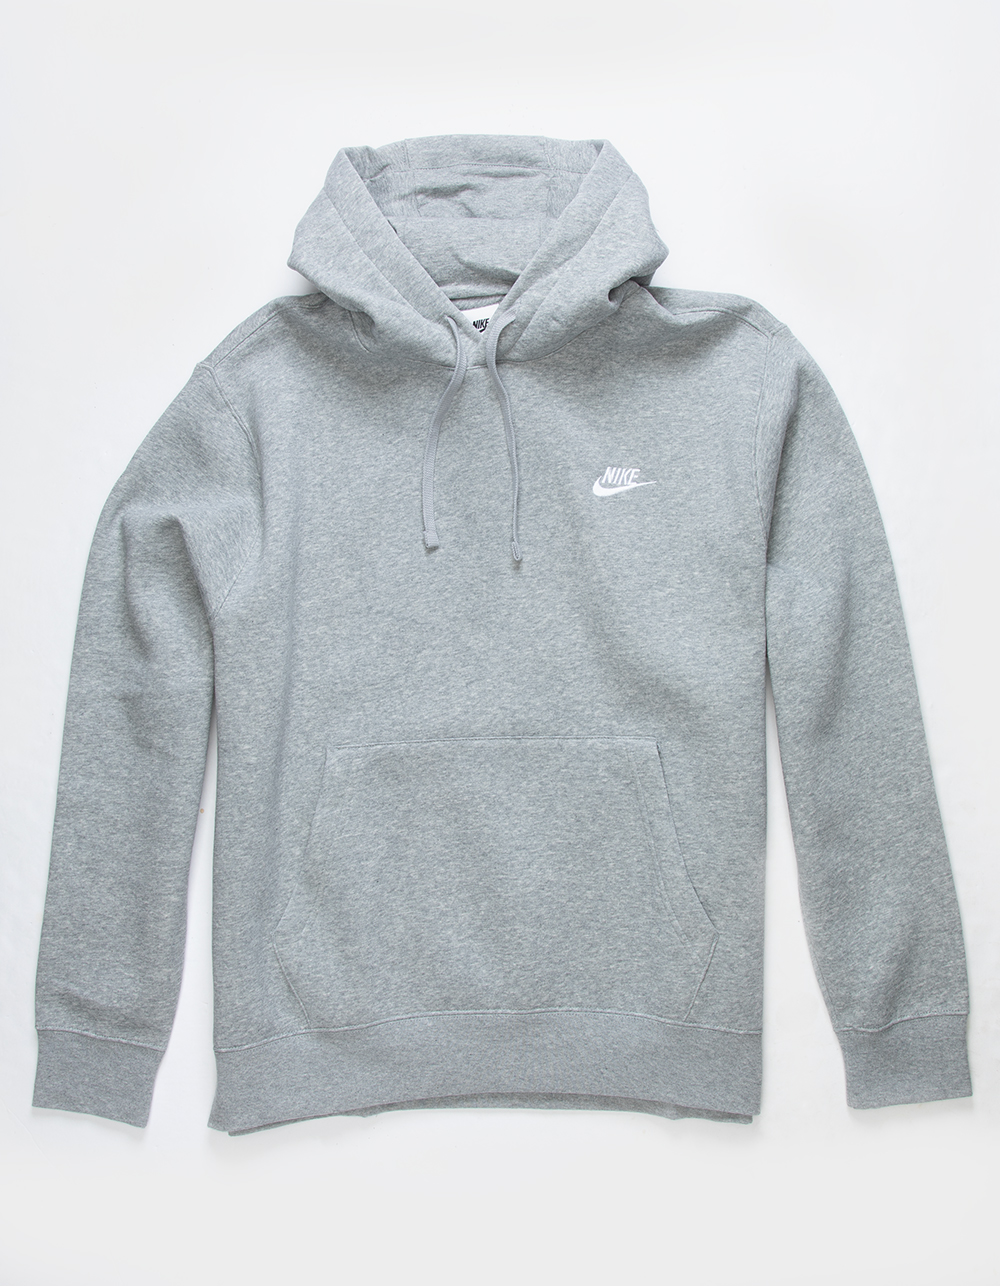 Men's Nike Sportswear Club Fleece Pullover Hoodie, Size: XL, Grey